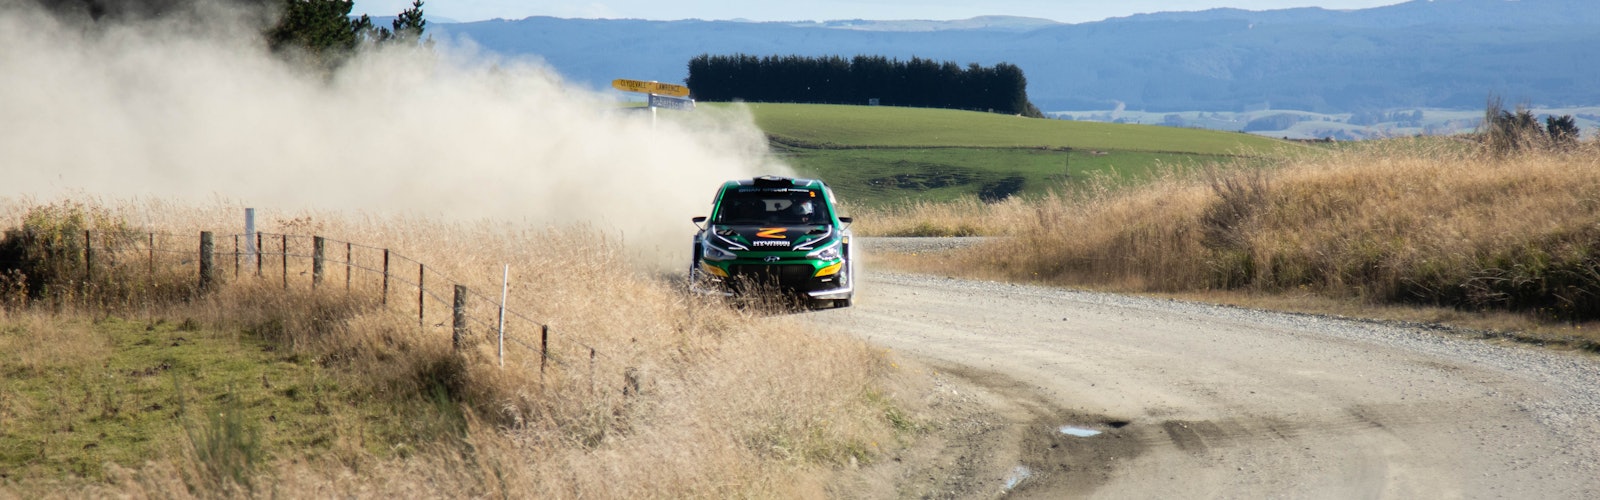 Paddon Kennard Otago Rally 2021 by Buzz Haggarty 2Y5A3477